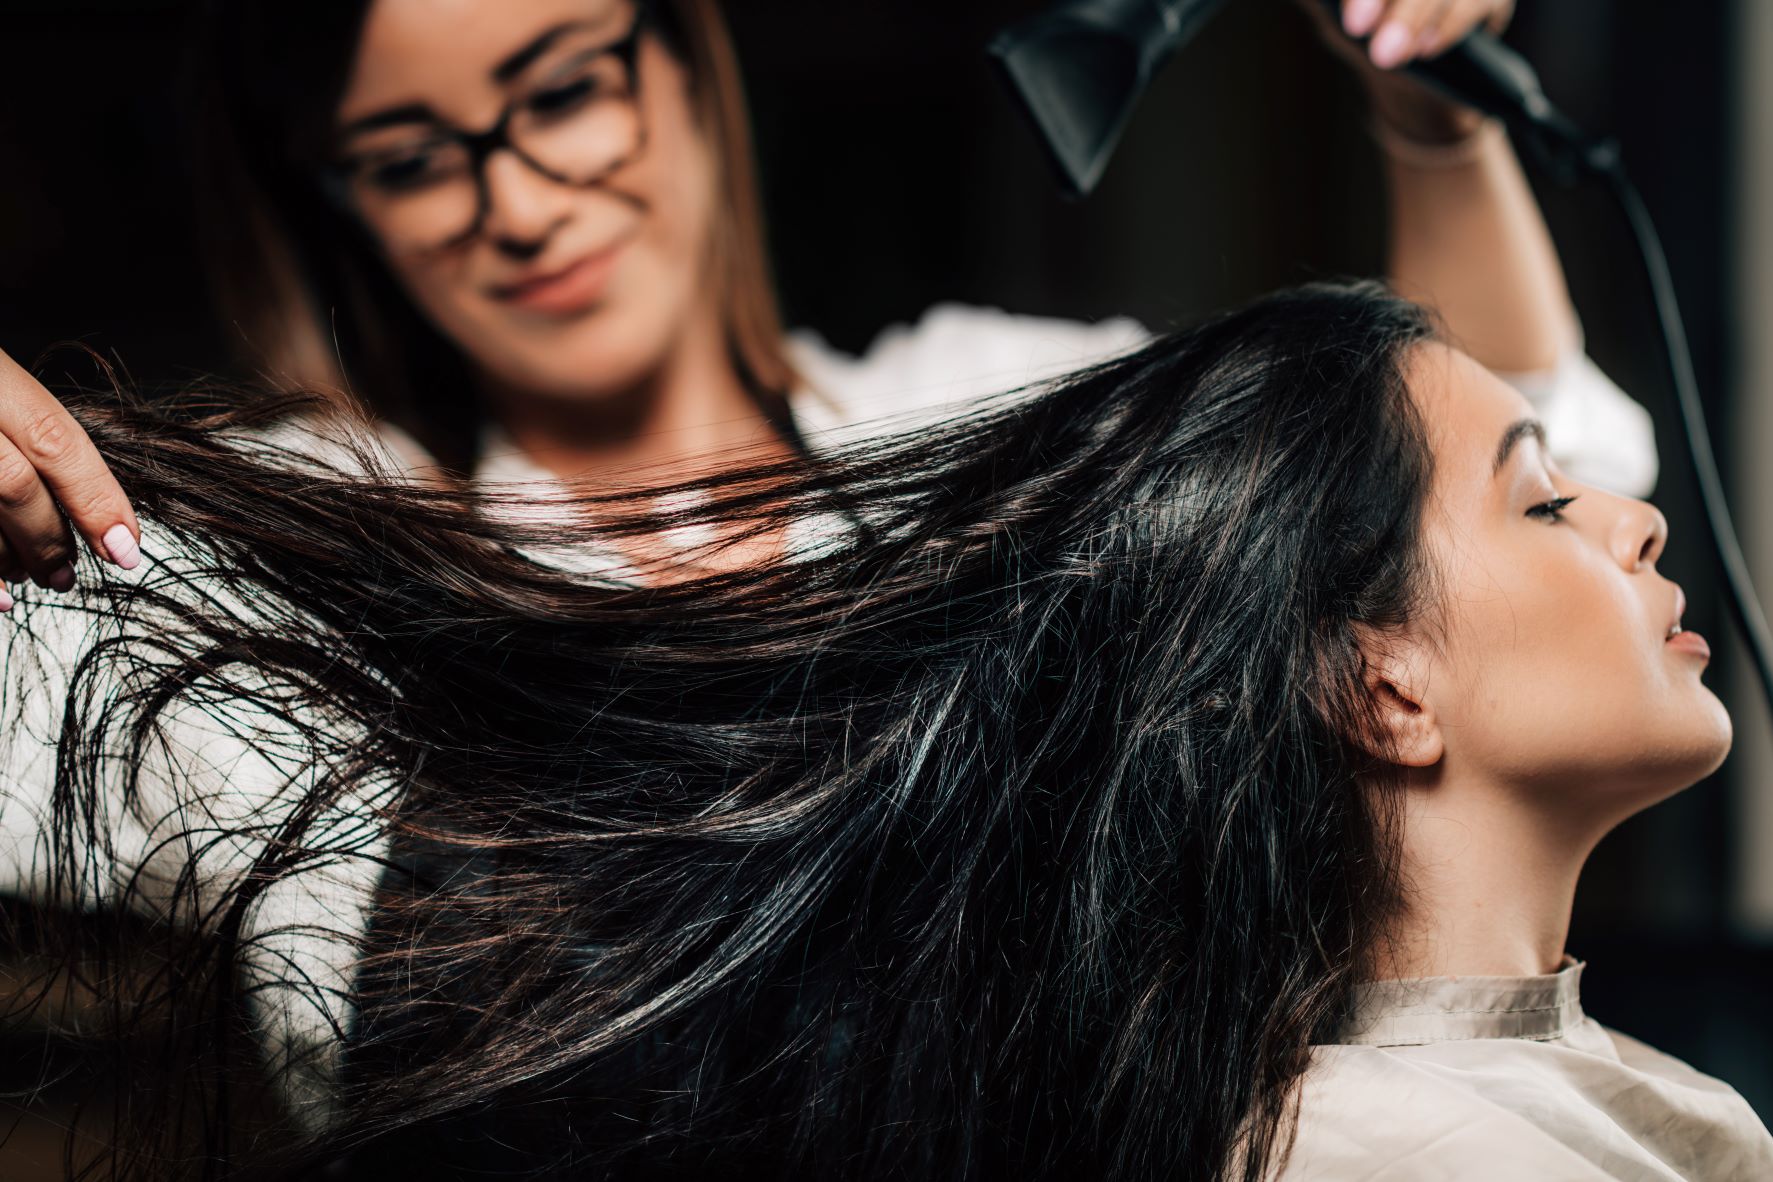 Hair stylist blow drying a woman's long, dark hair